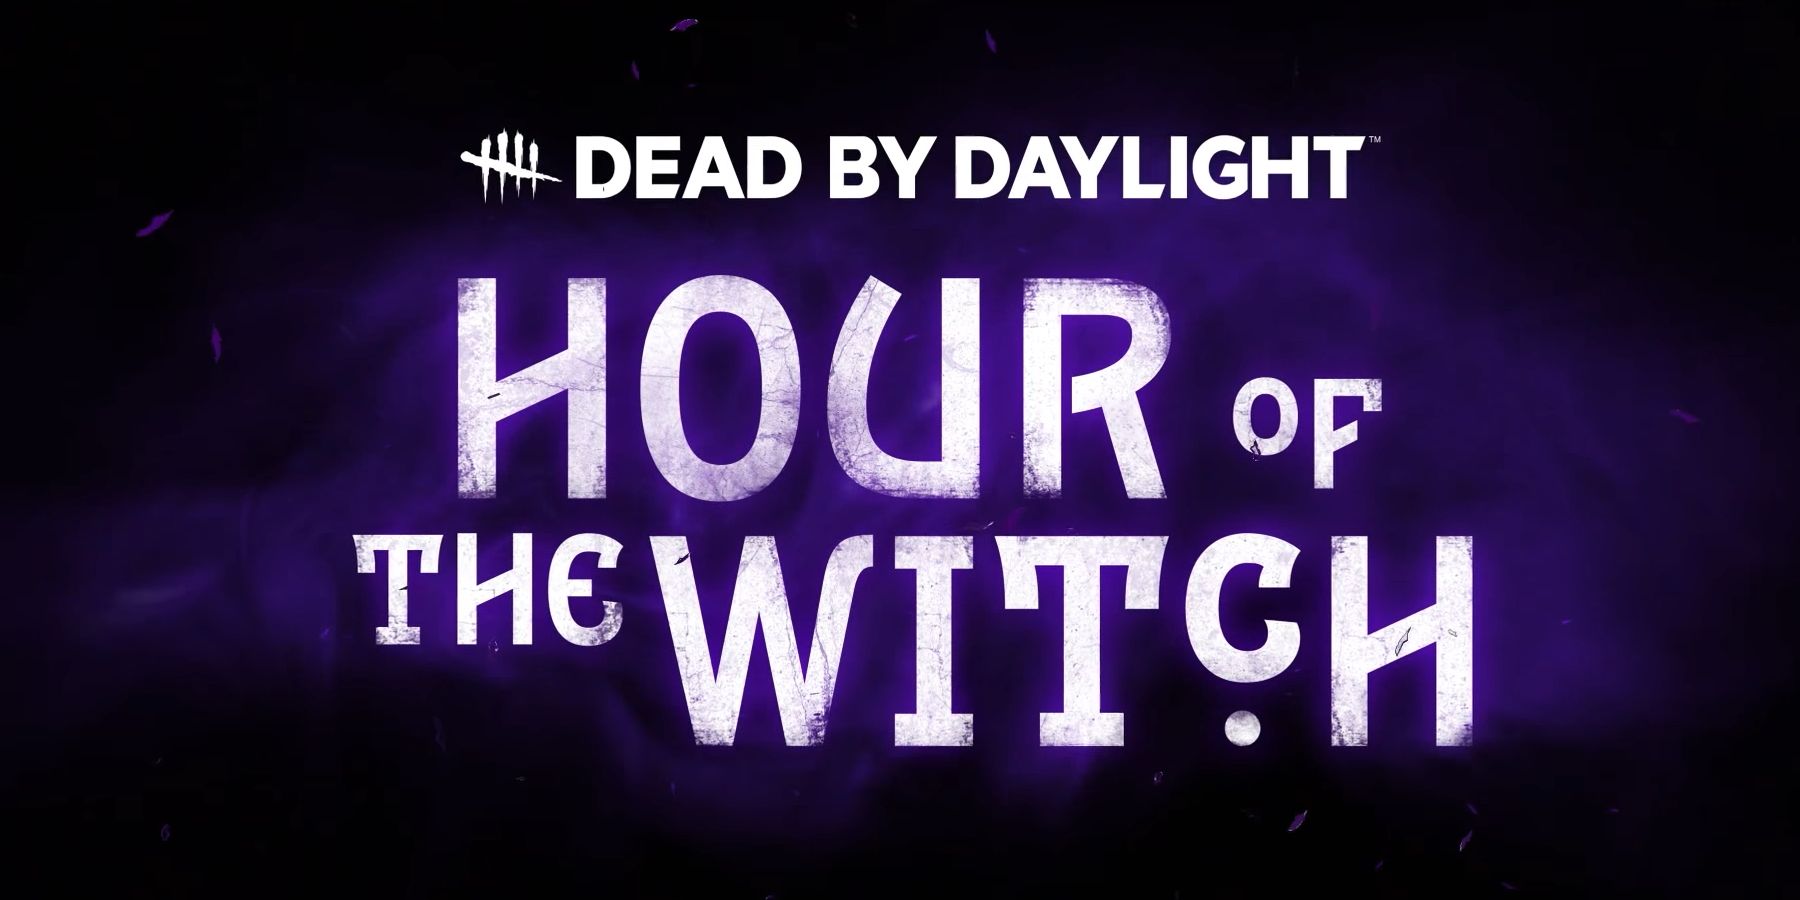 Dead by дневной свет показывает час Witch DLC для Хэллоуина с новым выжившим